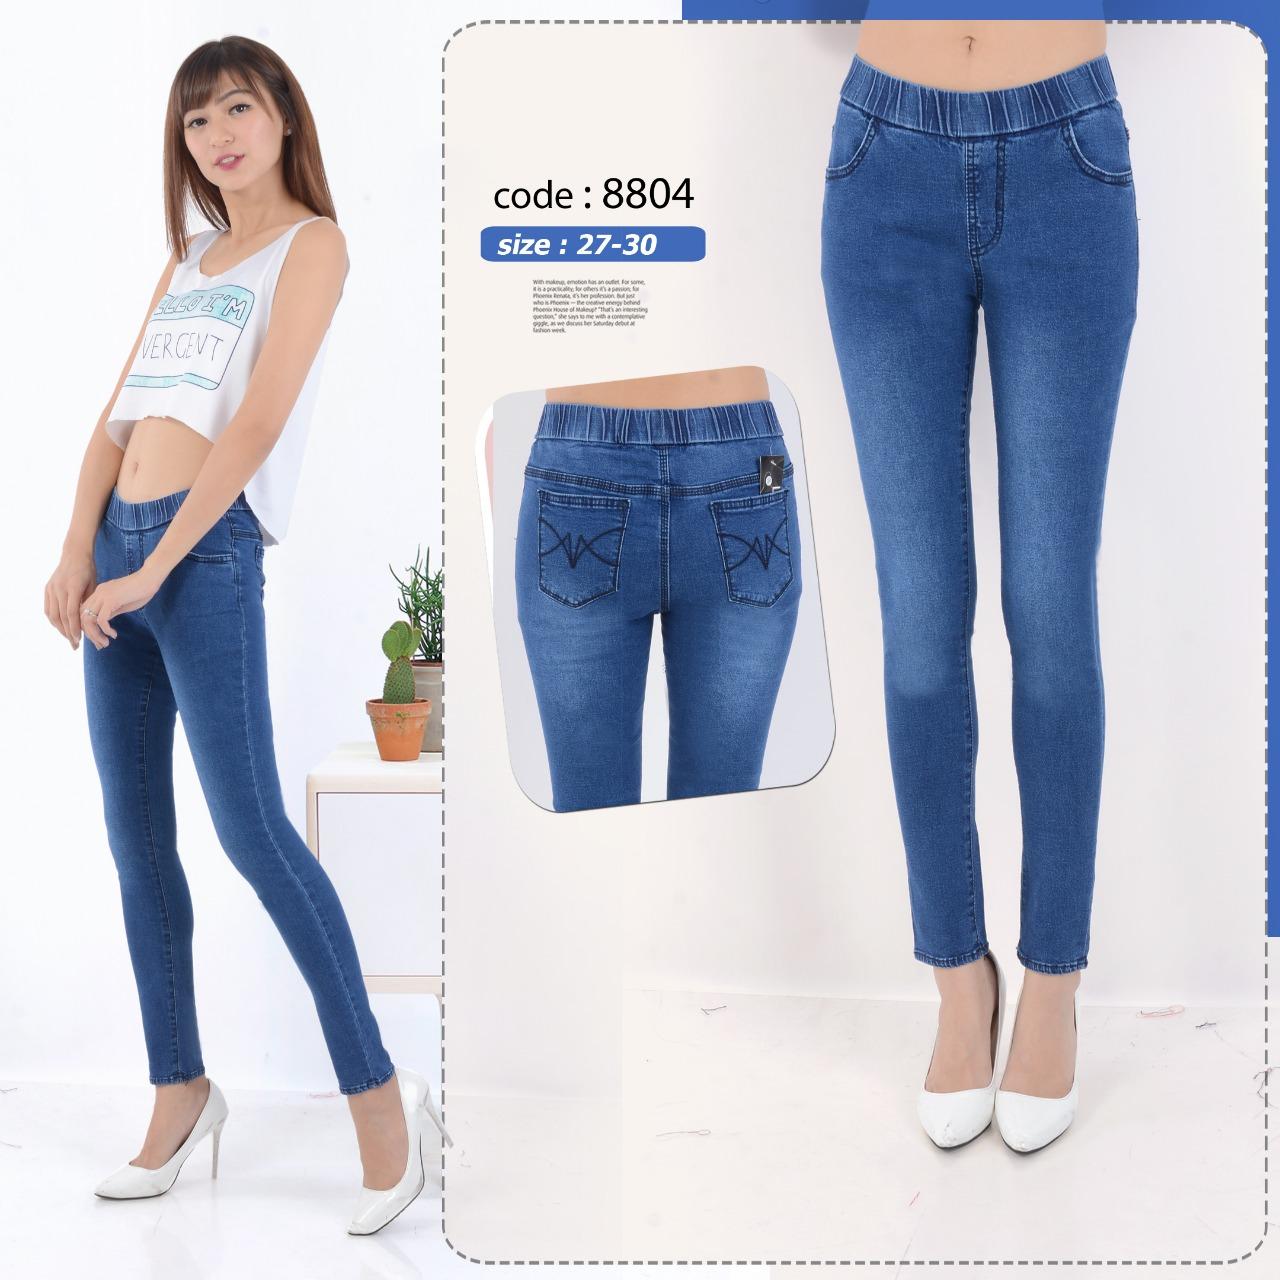  Celana  Jeans Wanita Terbaru Big Size Masakini Banget 